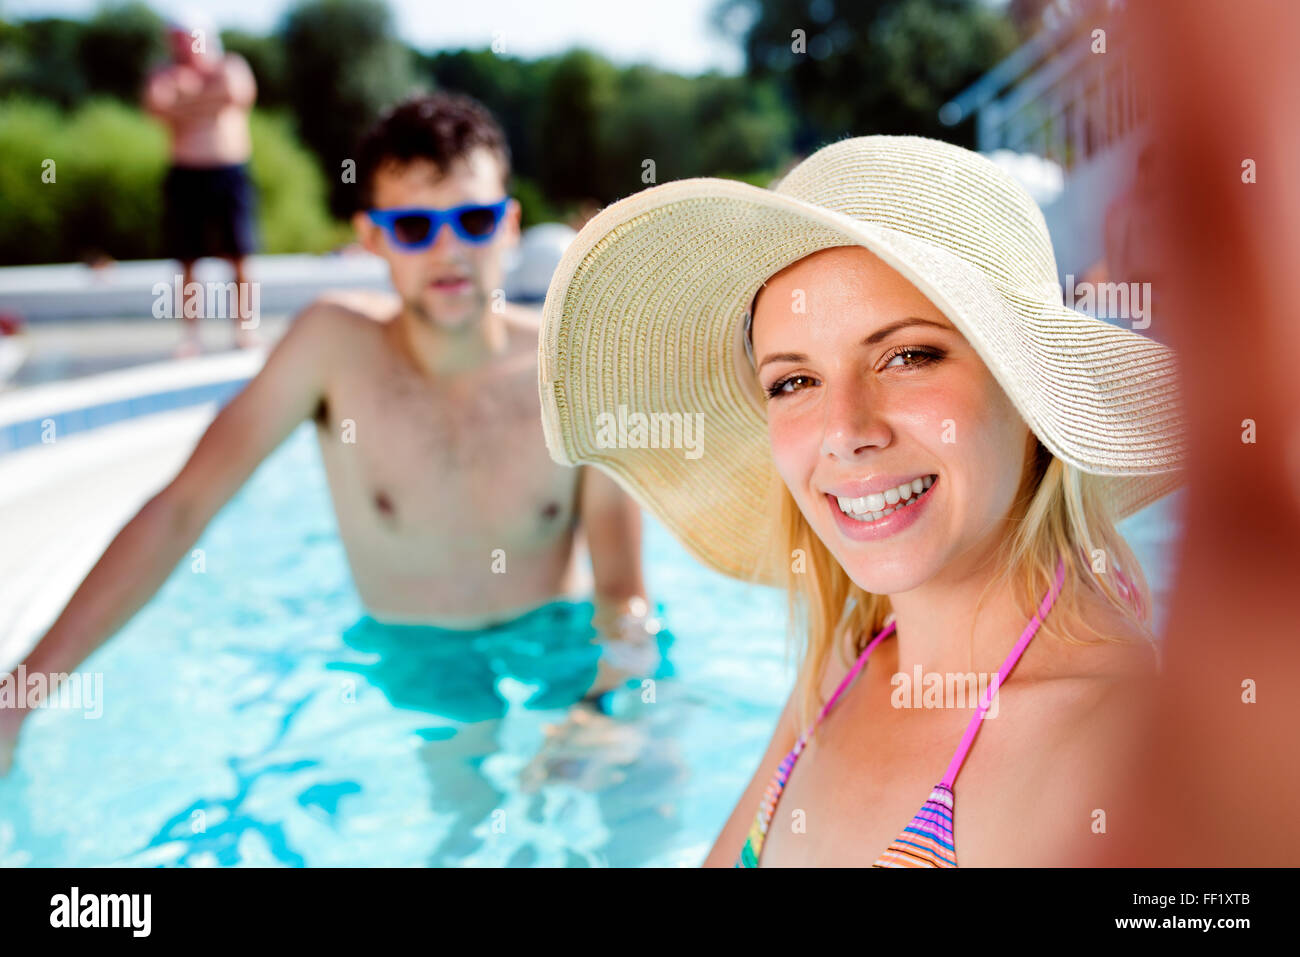 Foto Hombre con gafas de sol negras en la piscina – Imagen Persona